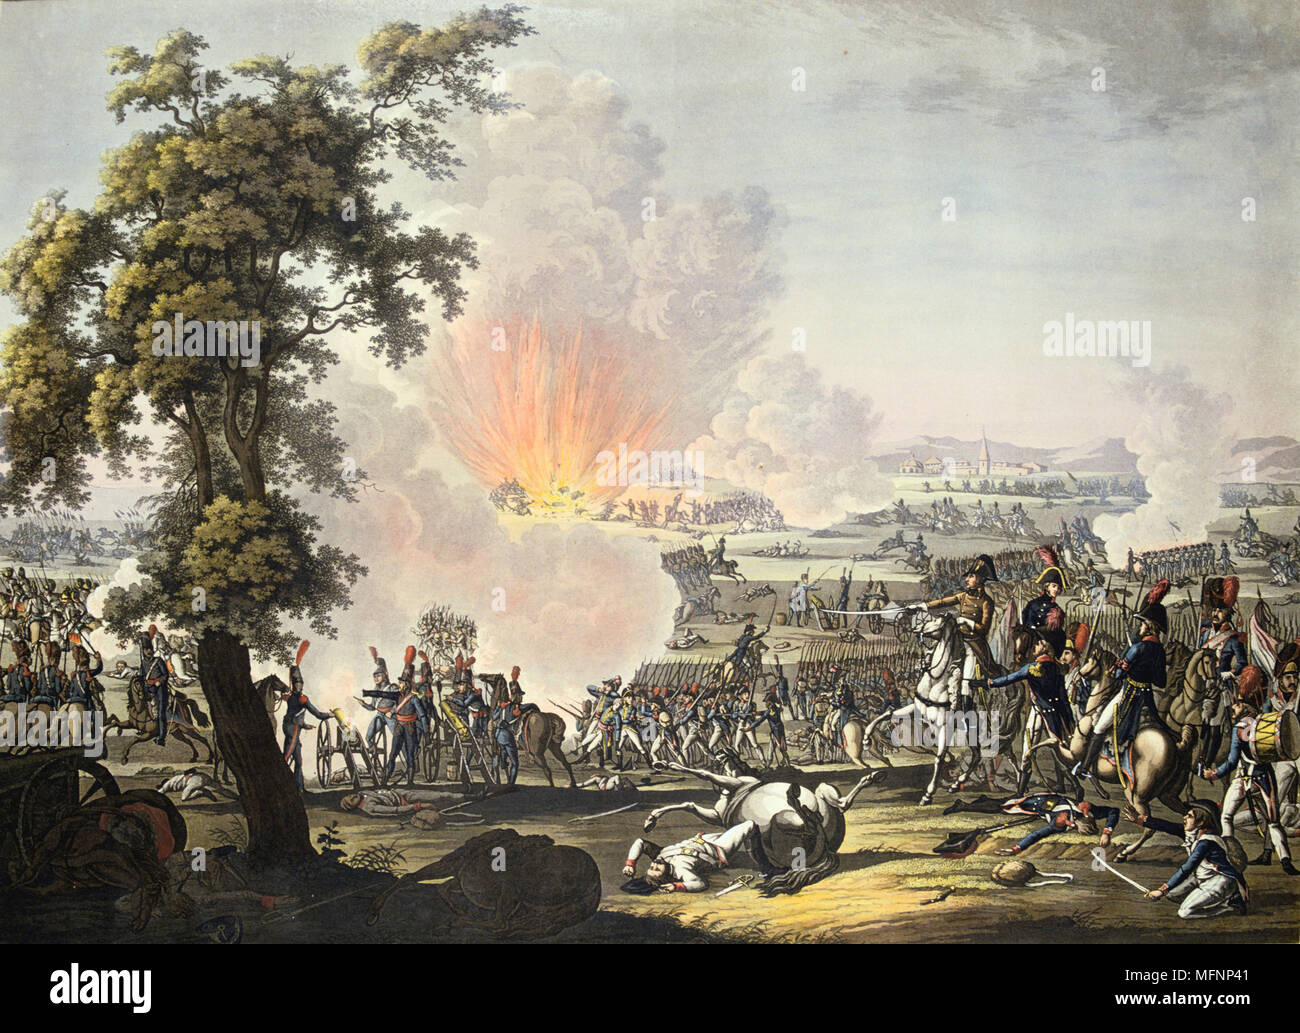 Napoléon à la bataille de Marengo, le 14 juin 1800. Les forces françaises sous Napoléon défait les autrichiens. Gravure Banque D'Images